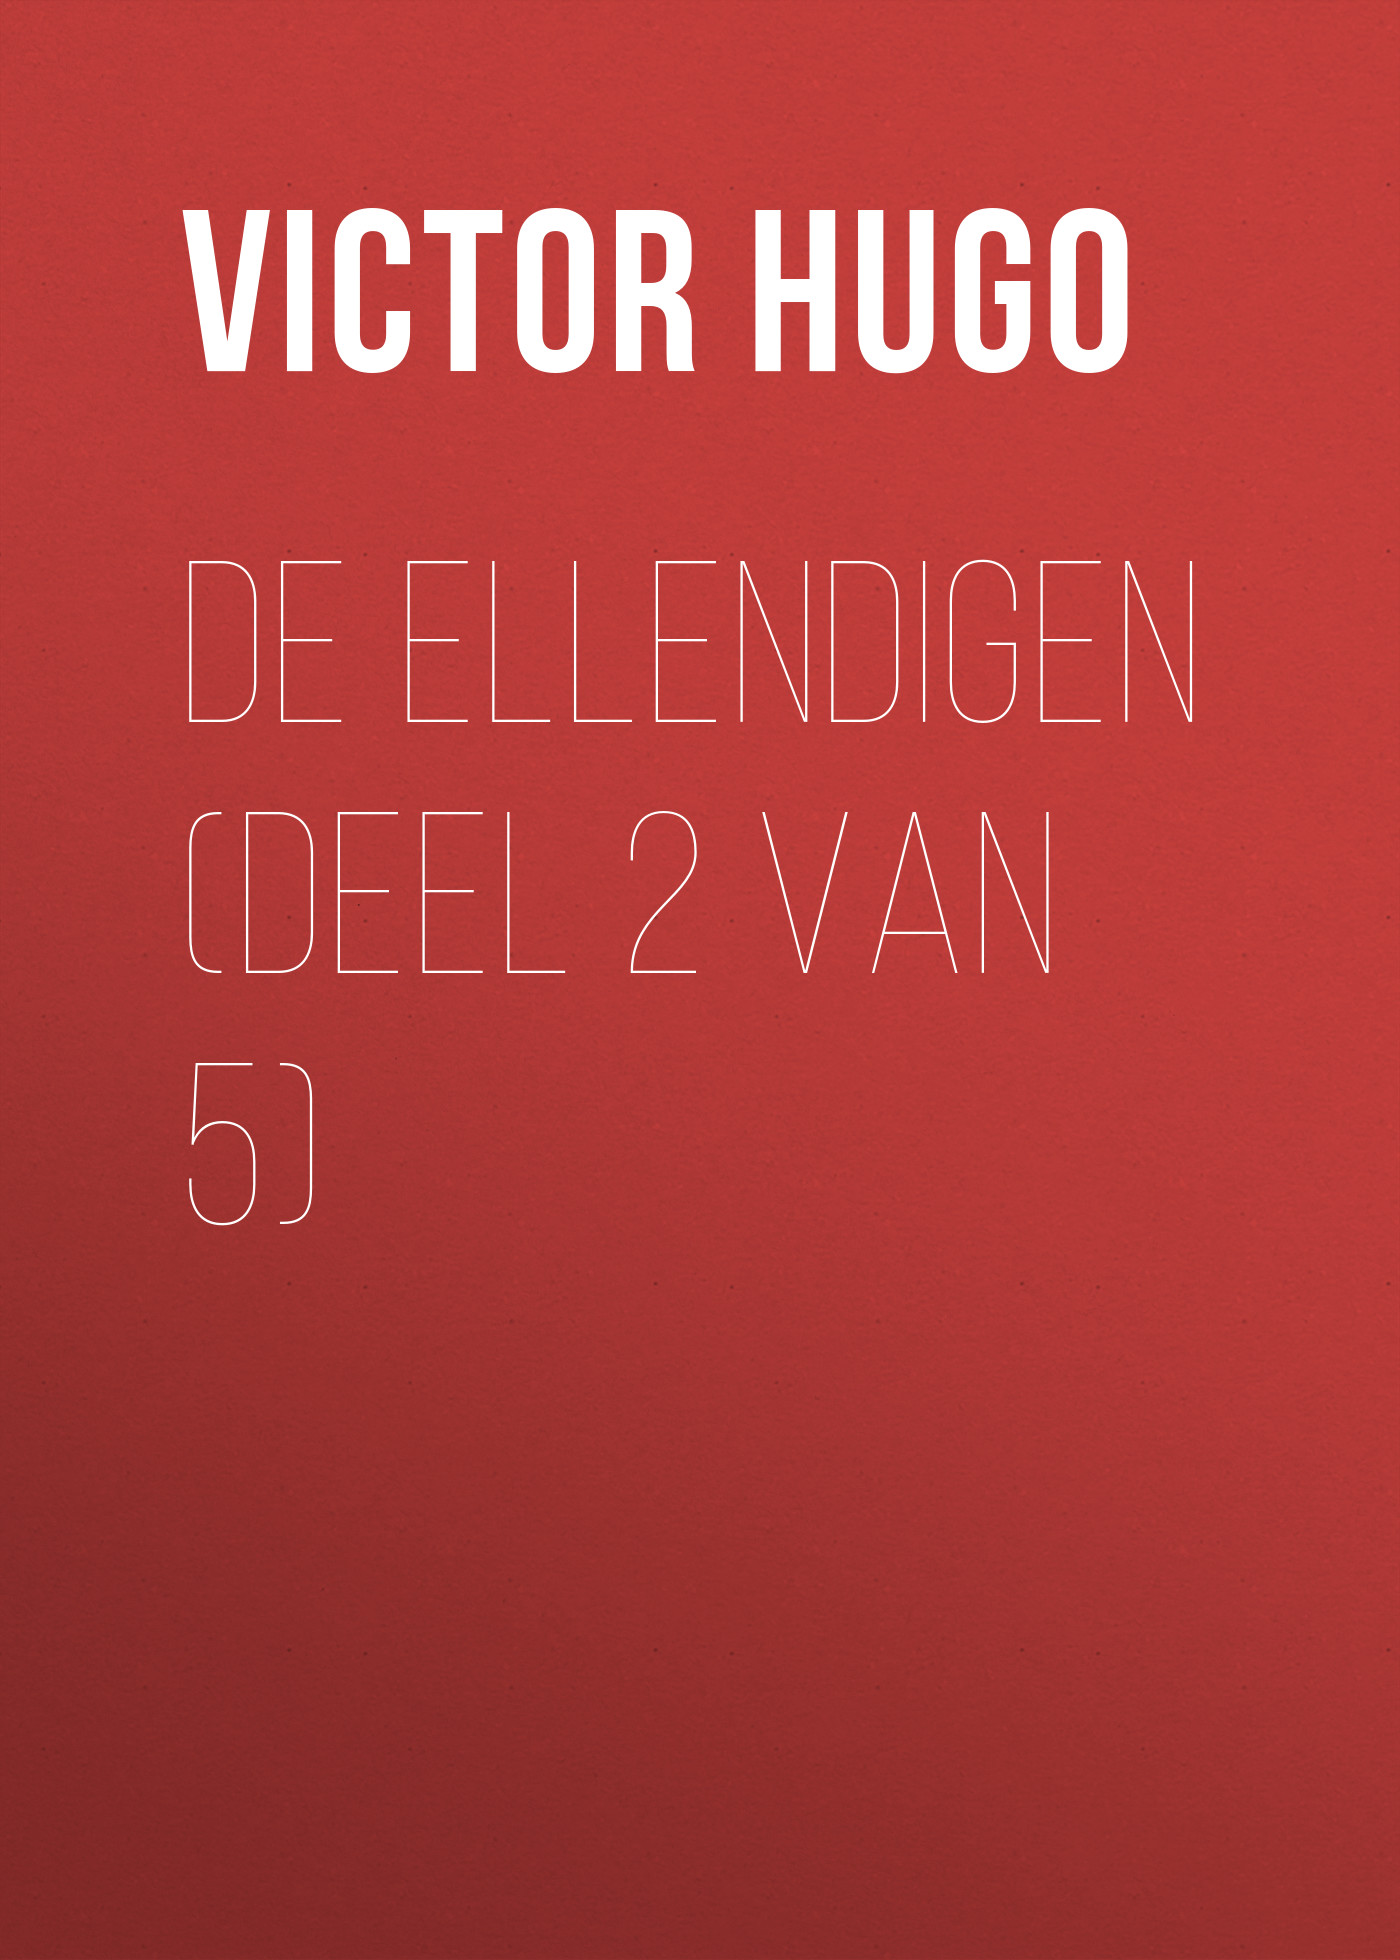 Книга De Ellendigen (Deel 2 van 5) из серии , созданная Victor Hugo, может относится к жанру Литература 19 века, Зарубежная старинная литература, Зарубежная классика. Стоимость электронной книги De Ellendigen (Deel 2 van 5) с идентификатором 25230148 составляет 0 руб.